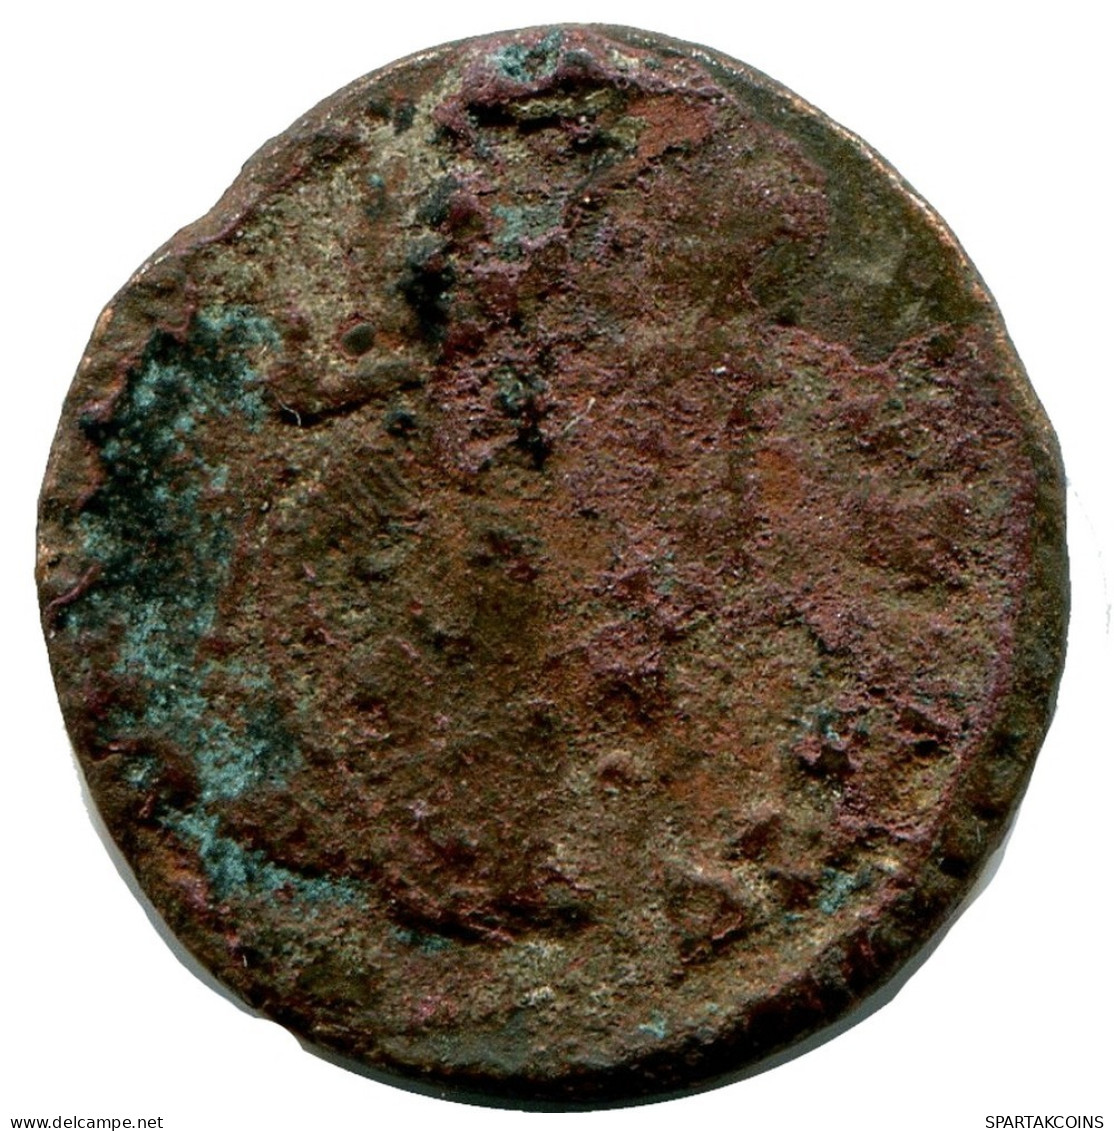 ROMAN Moneda MINTED IN ALEKSANDRIA FOUND IN IHNASYAH HOARD EGYPT #ANC10166.14.E.A - El Imperio Christiano (307 / 363)